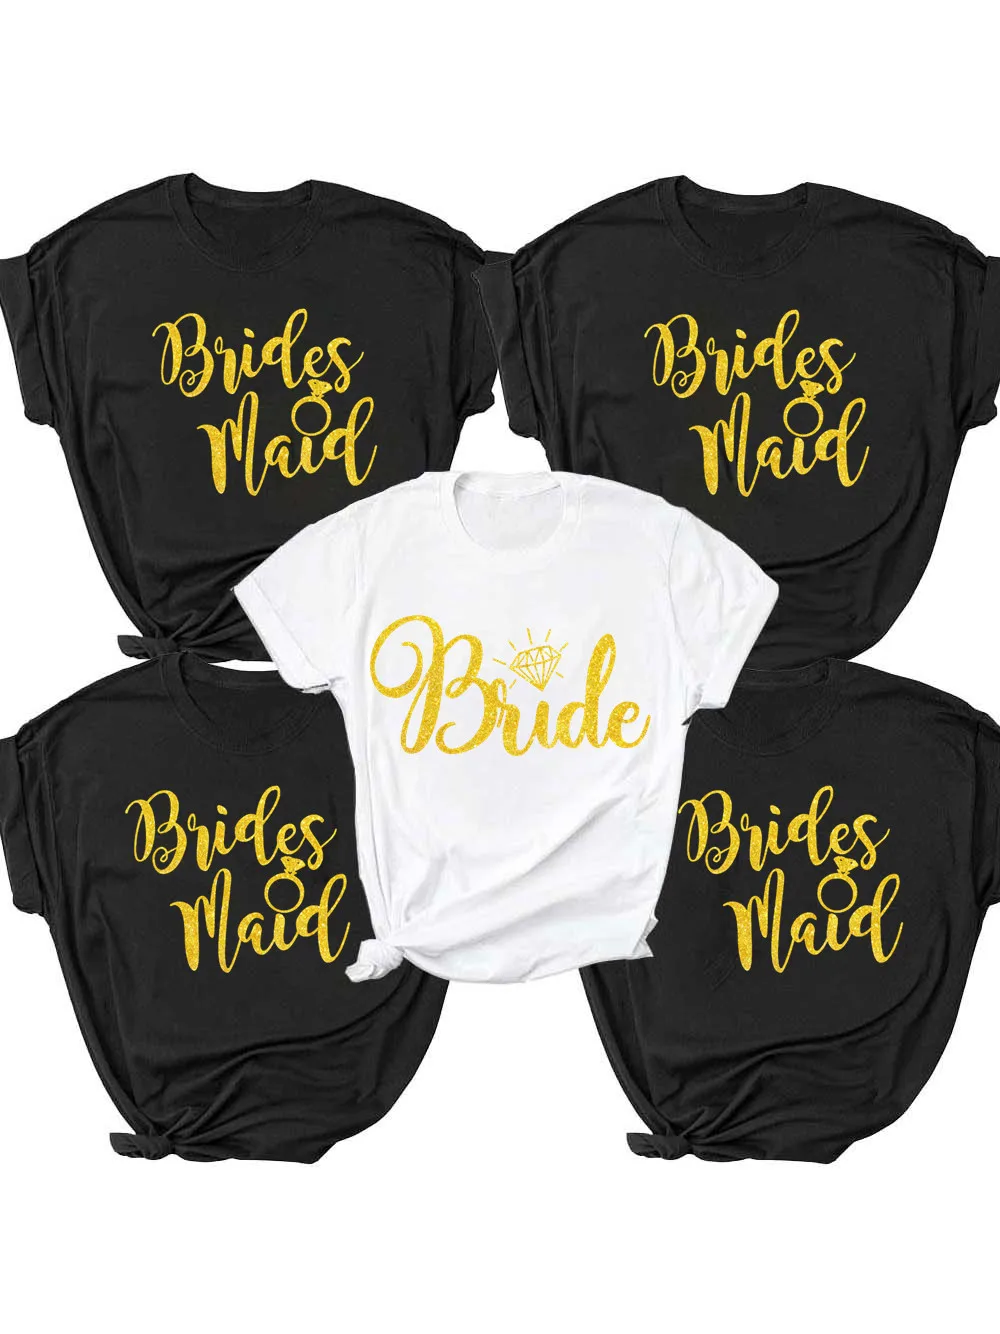 Фото Женская футболка для невесты девичника вечеринки команды горничной чести летняя